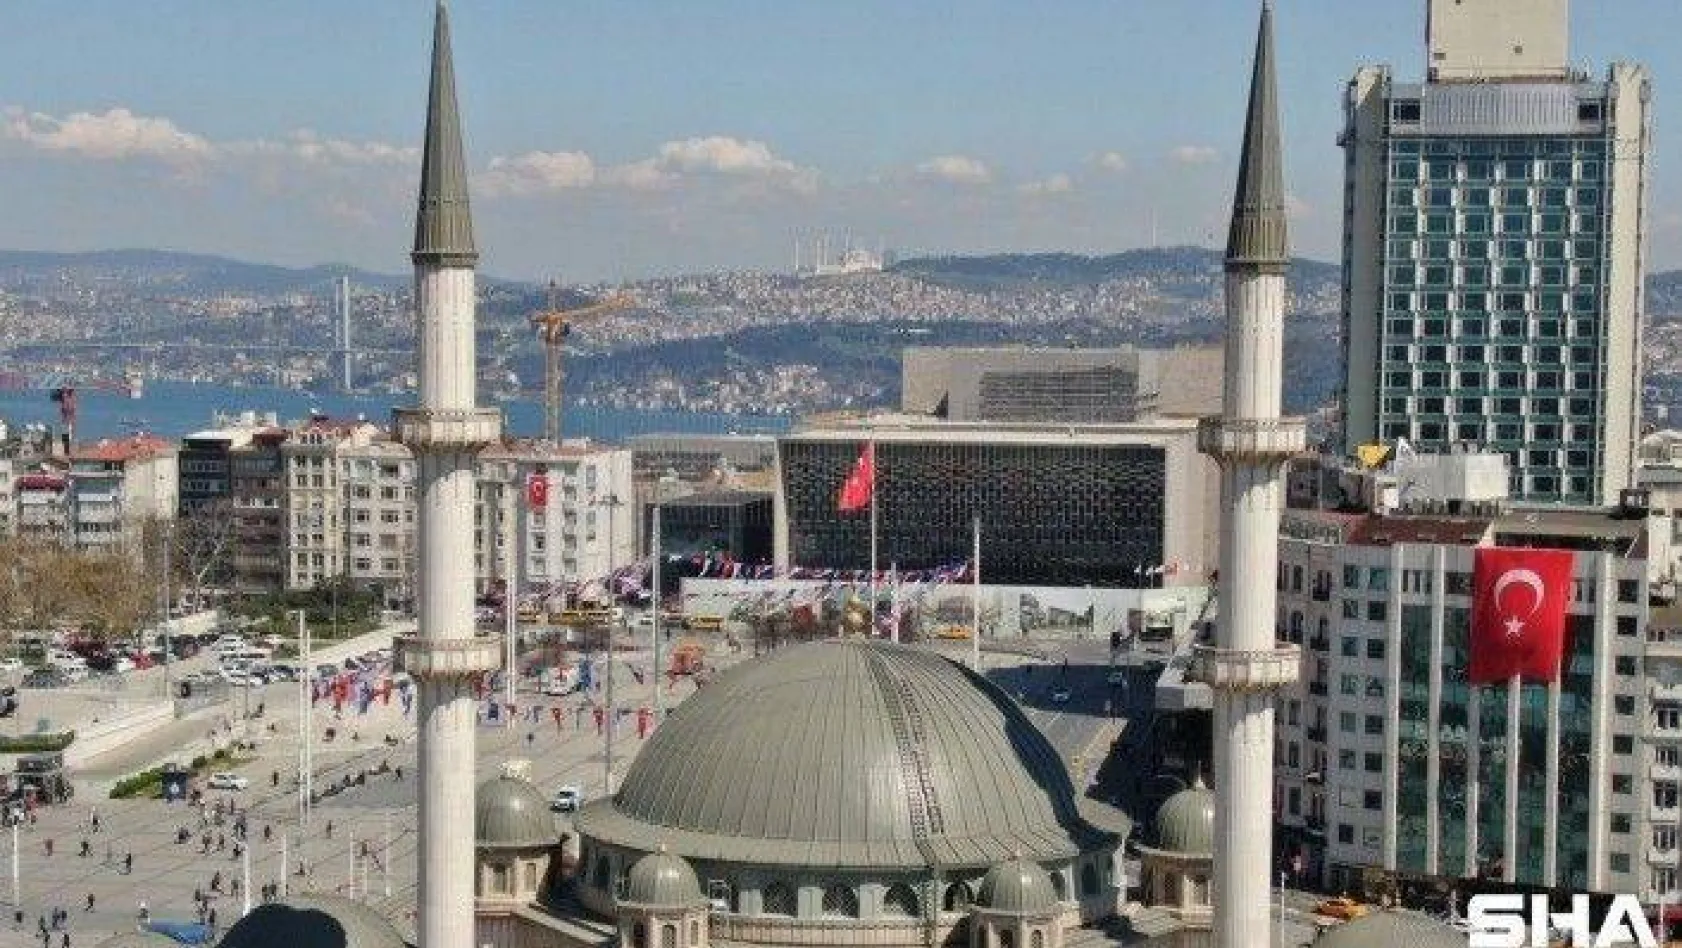 Taksim Camii, Çamlıca Camii ile aynı karede